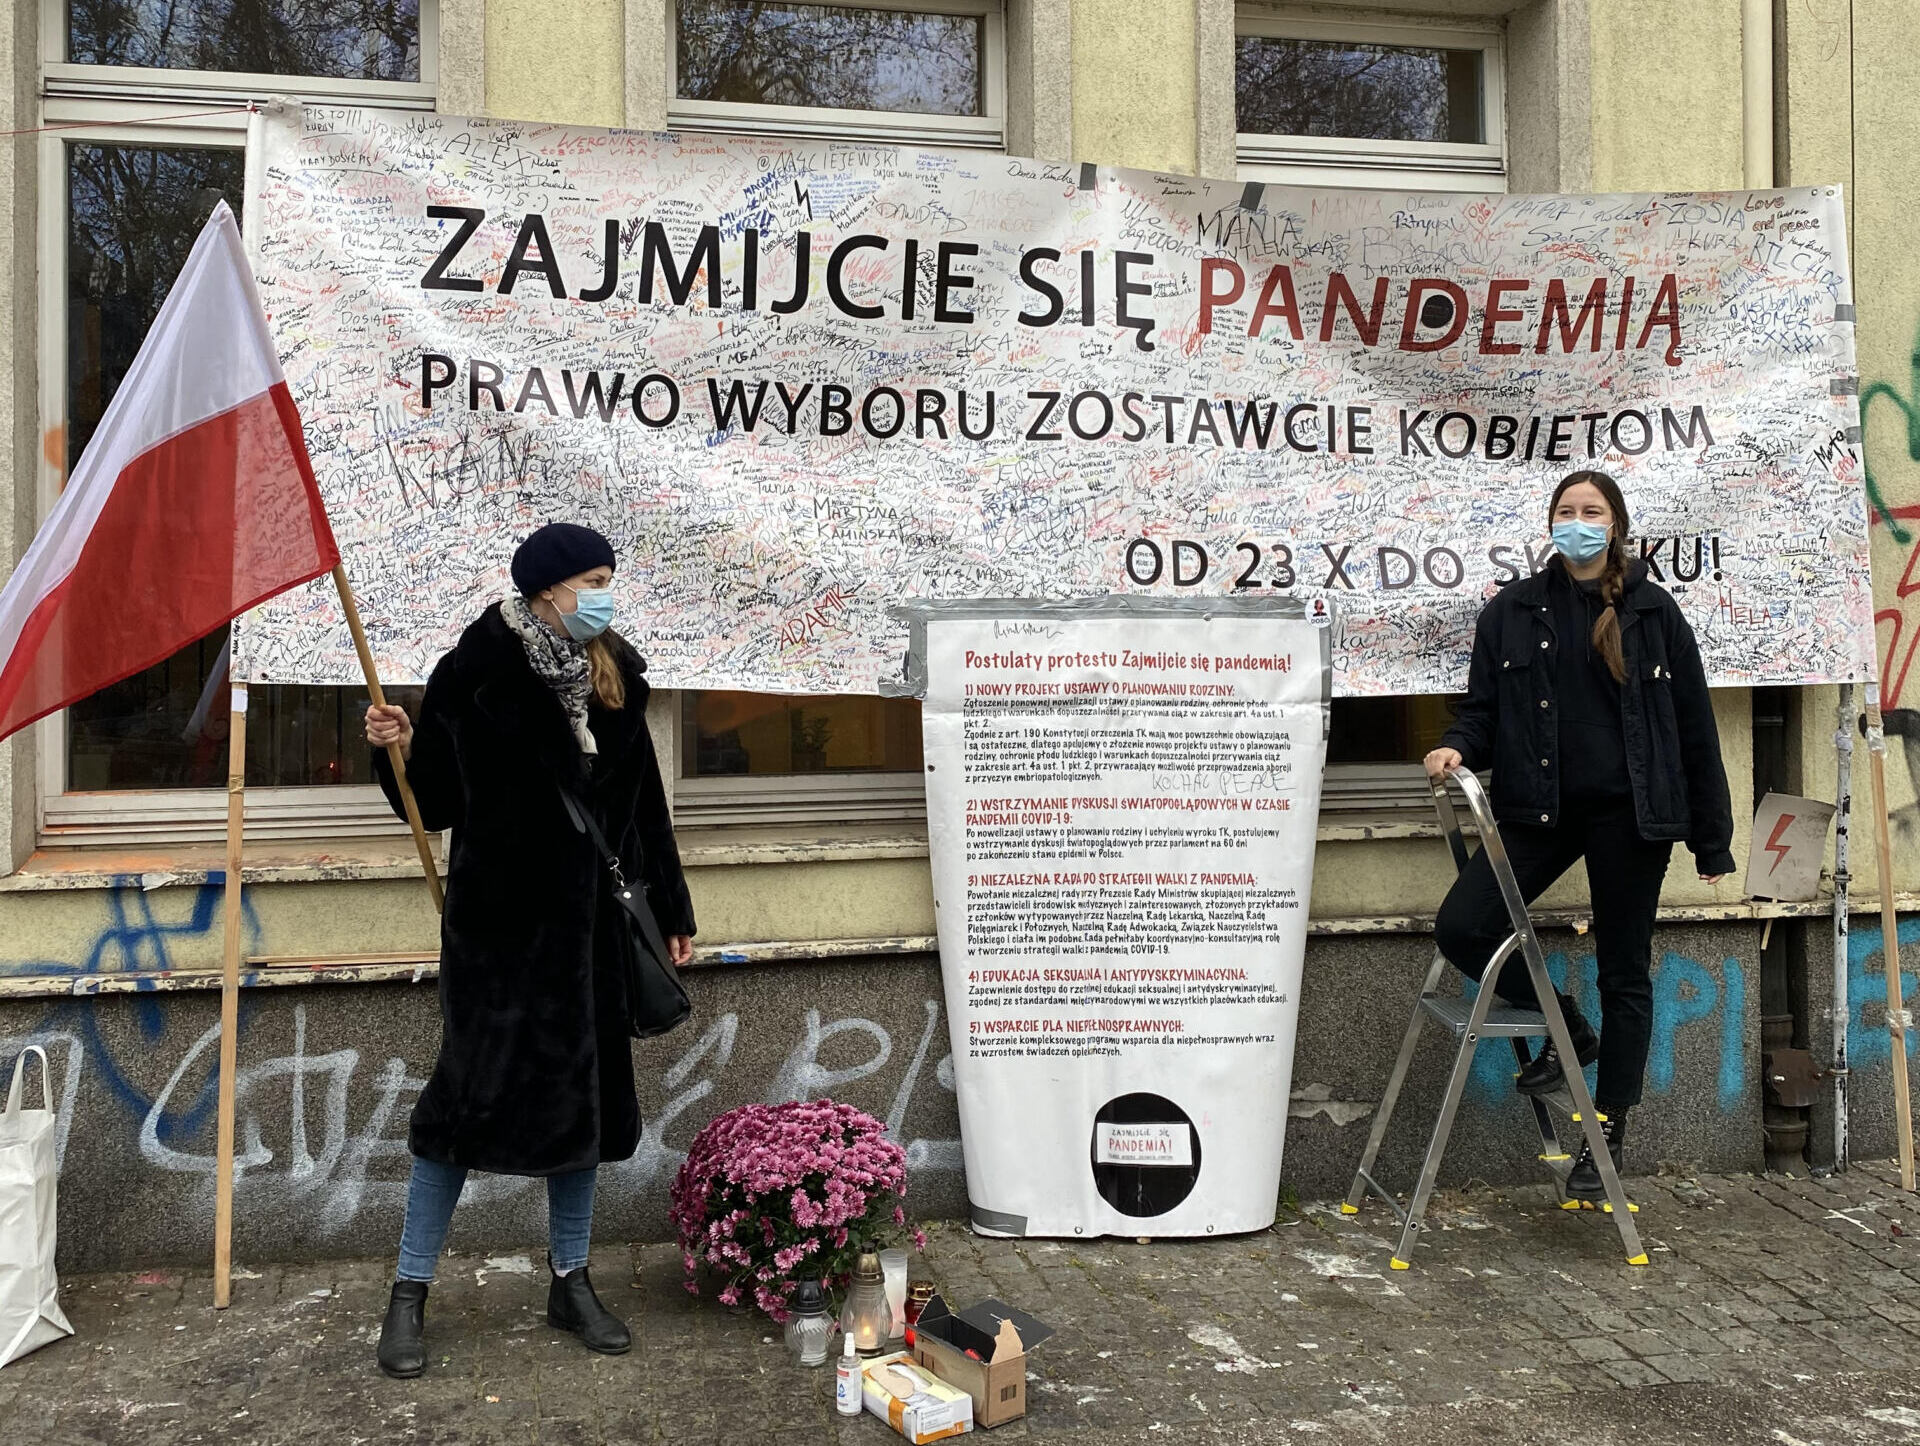 Kobiety pod transparentem "Zajmijcie się pandemią, wybór zostawcie kobietom" zapisanym dodatkowymi hasłami